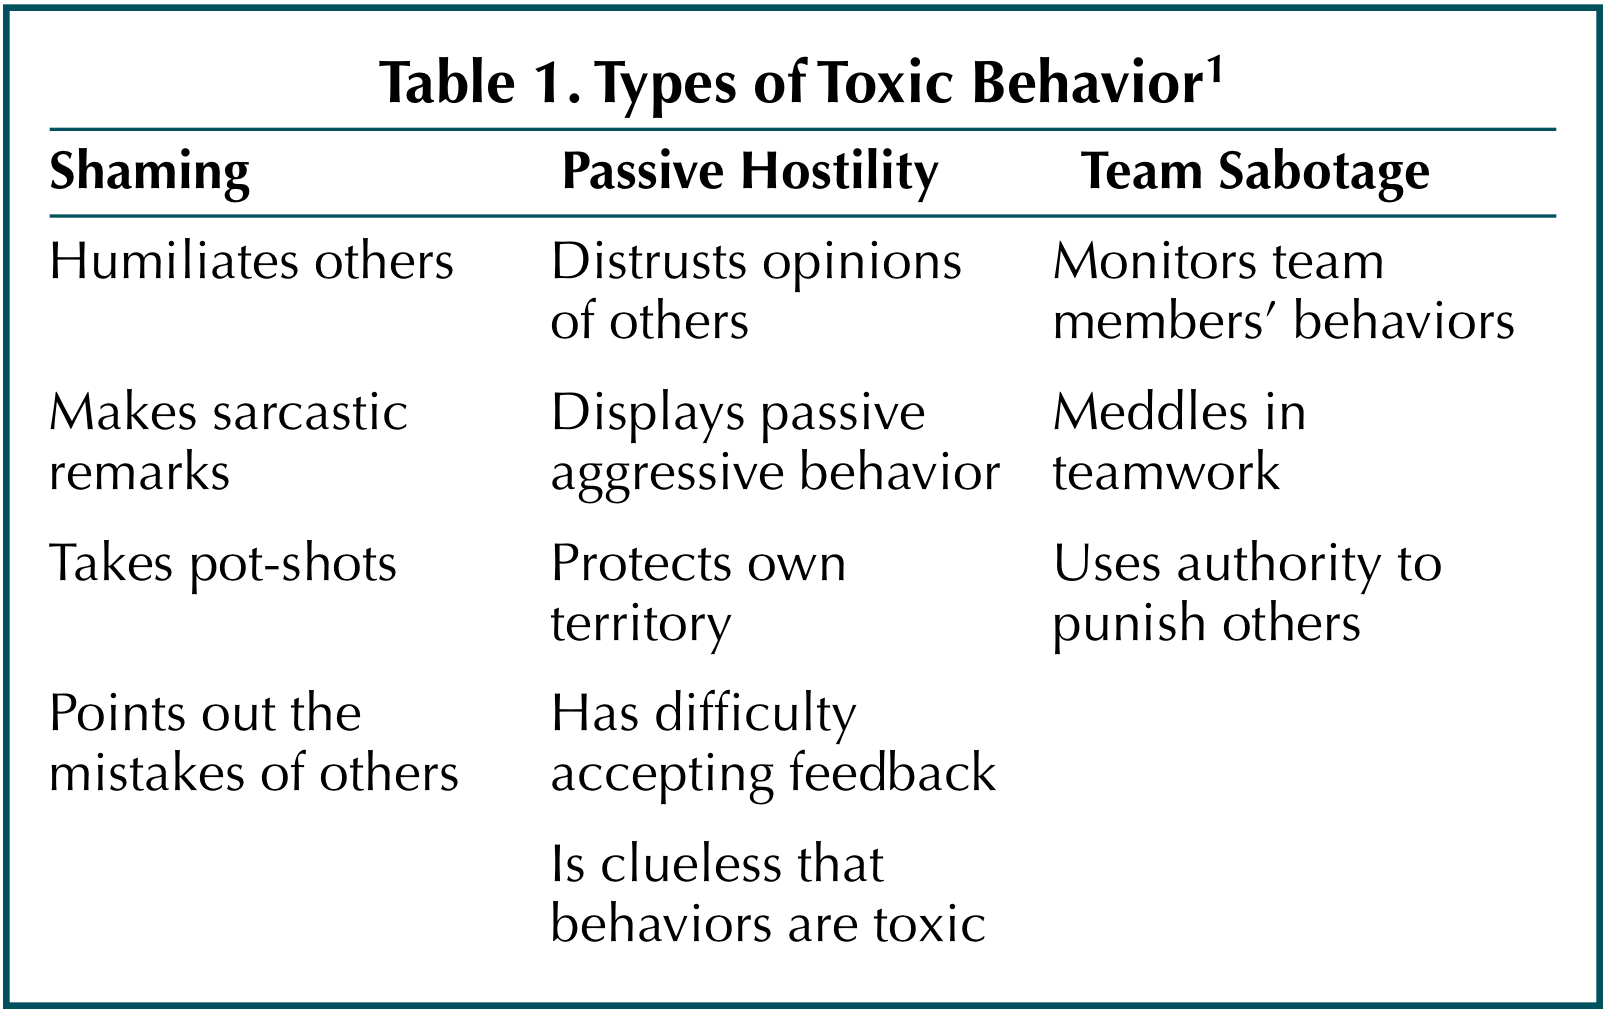 /assets/content/toxic-behaviors.png